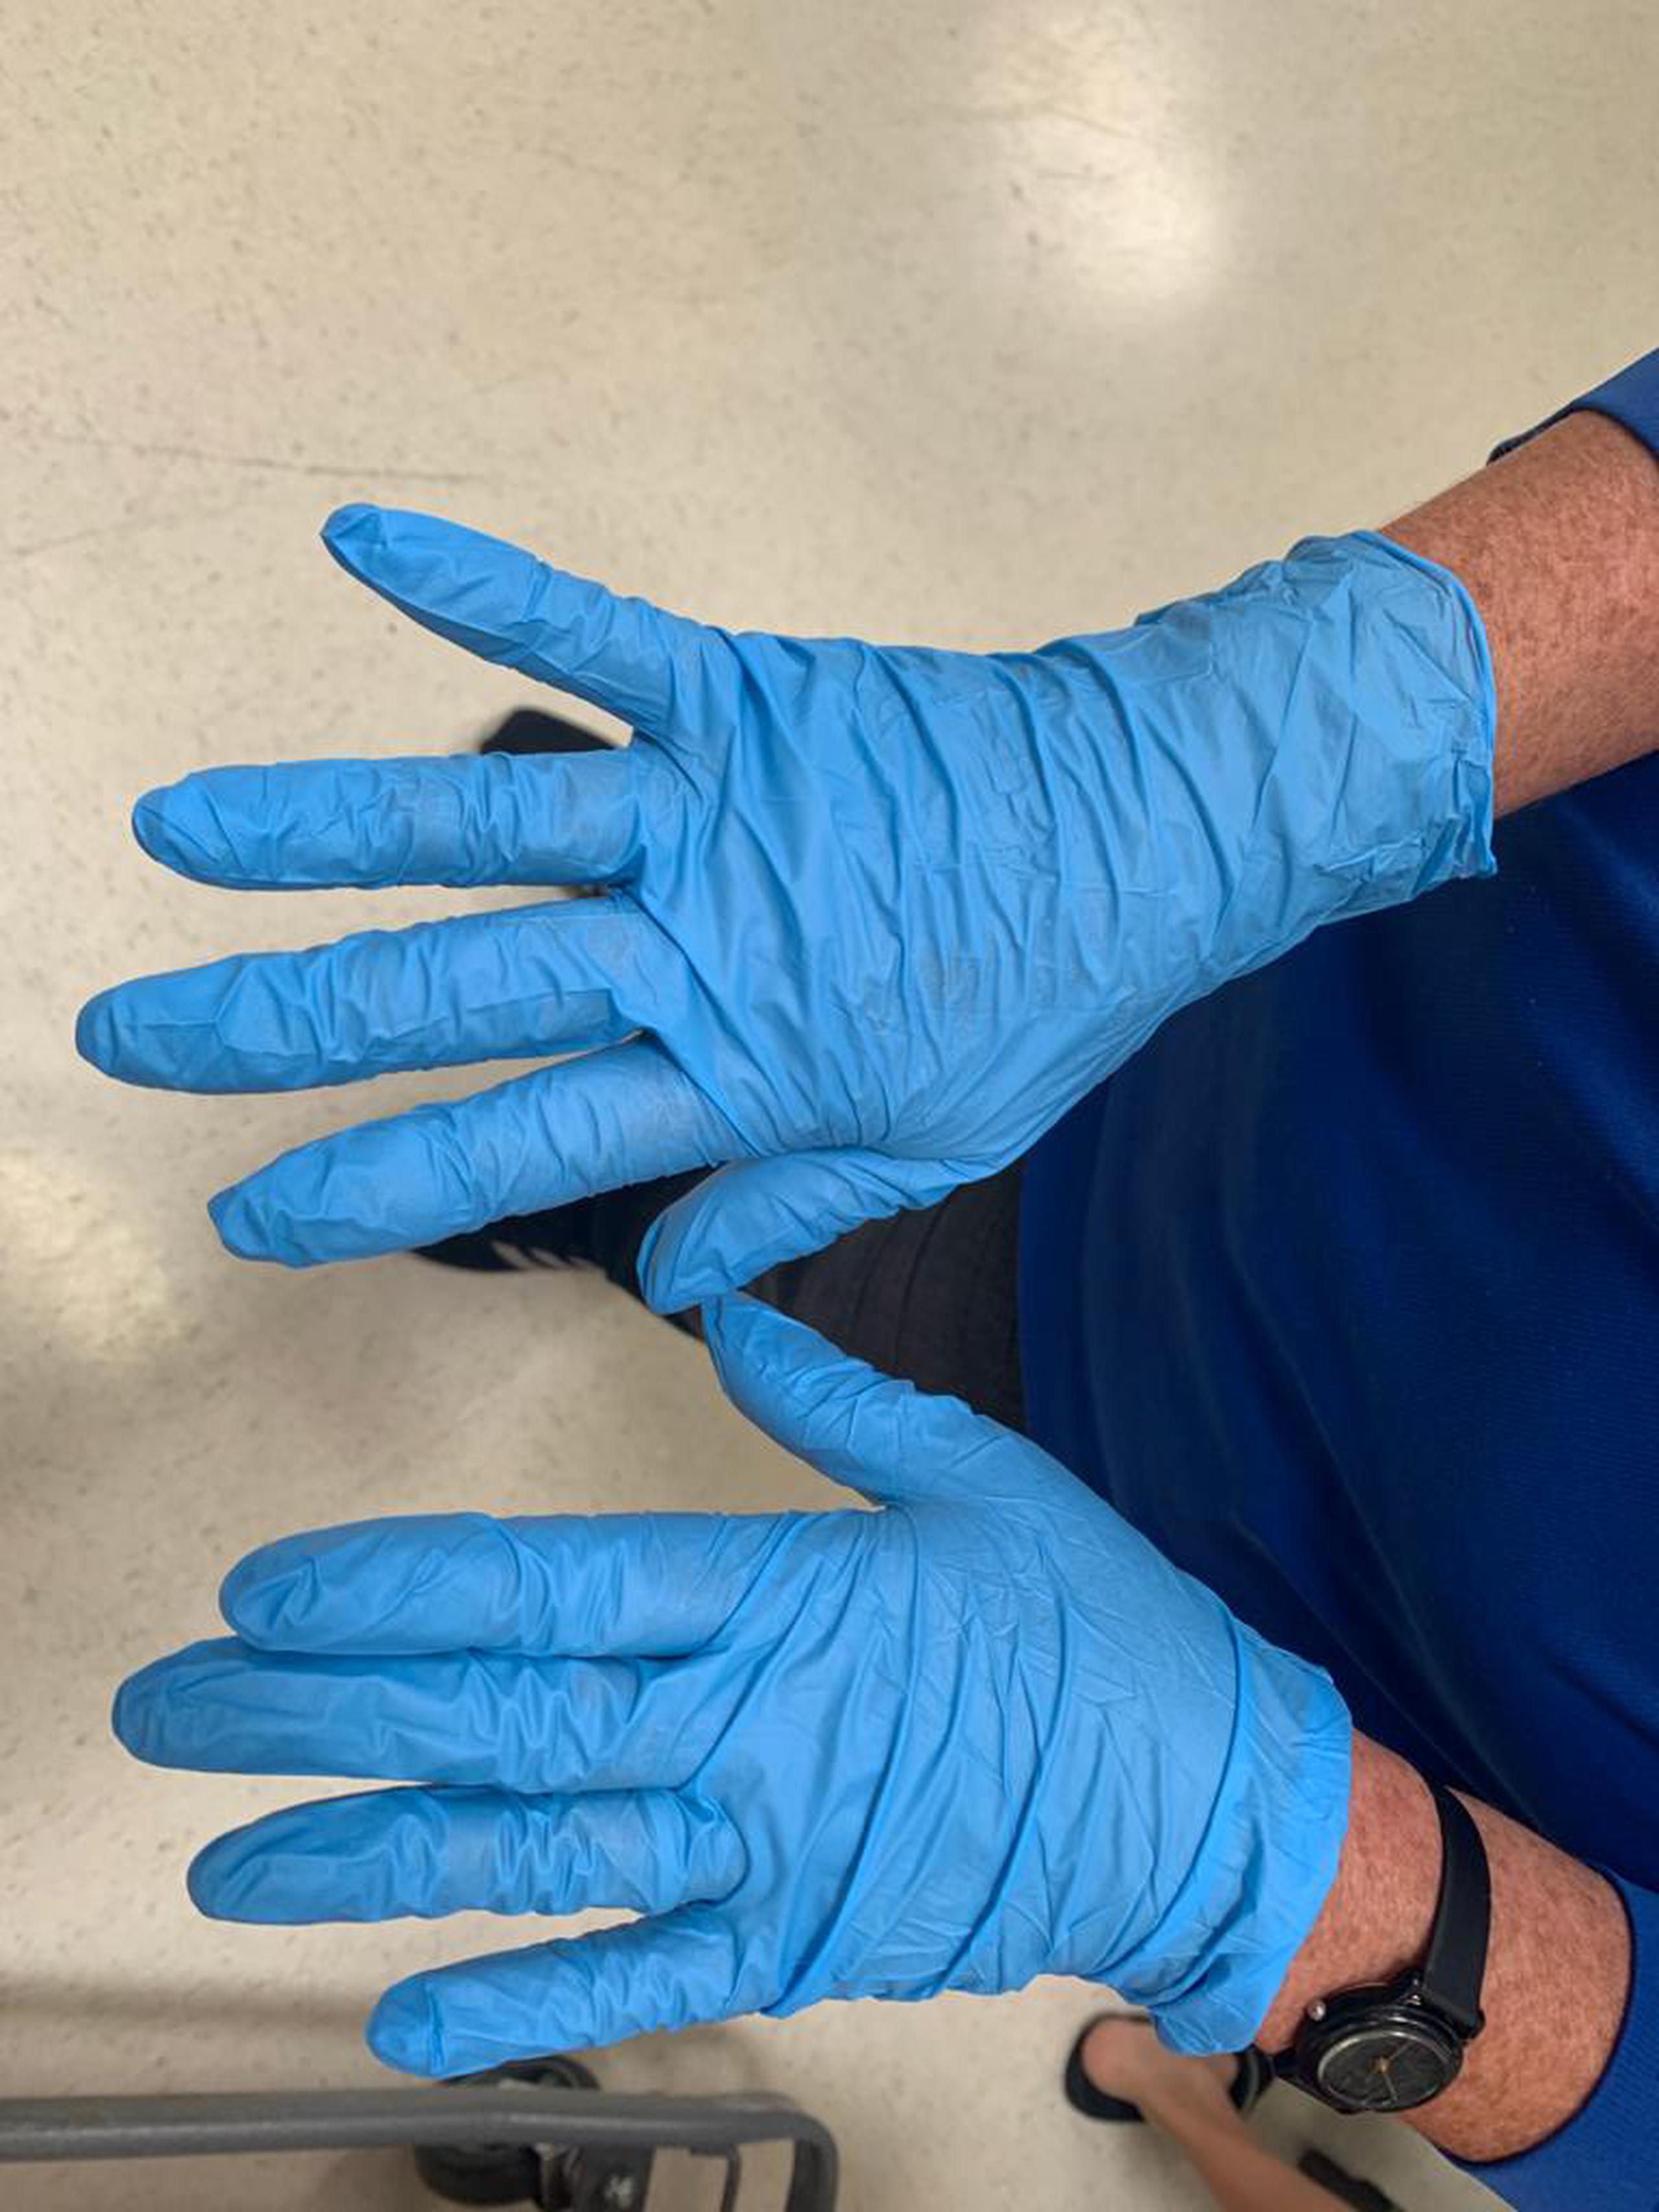 Entre las medidas higiénicas se observó el uso de guantes desechables entre los empleados y la limpieza frecuente de las bandas eléctricas en las cajas registradoras. 